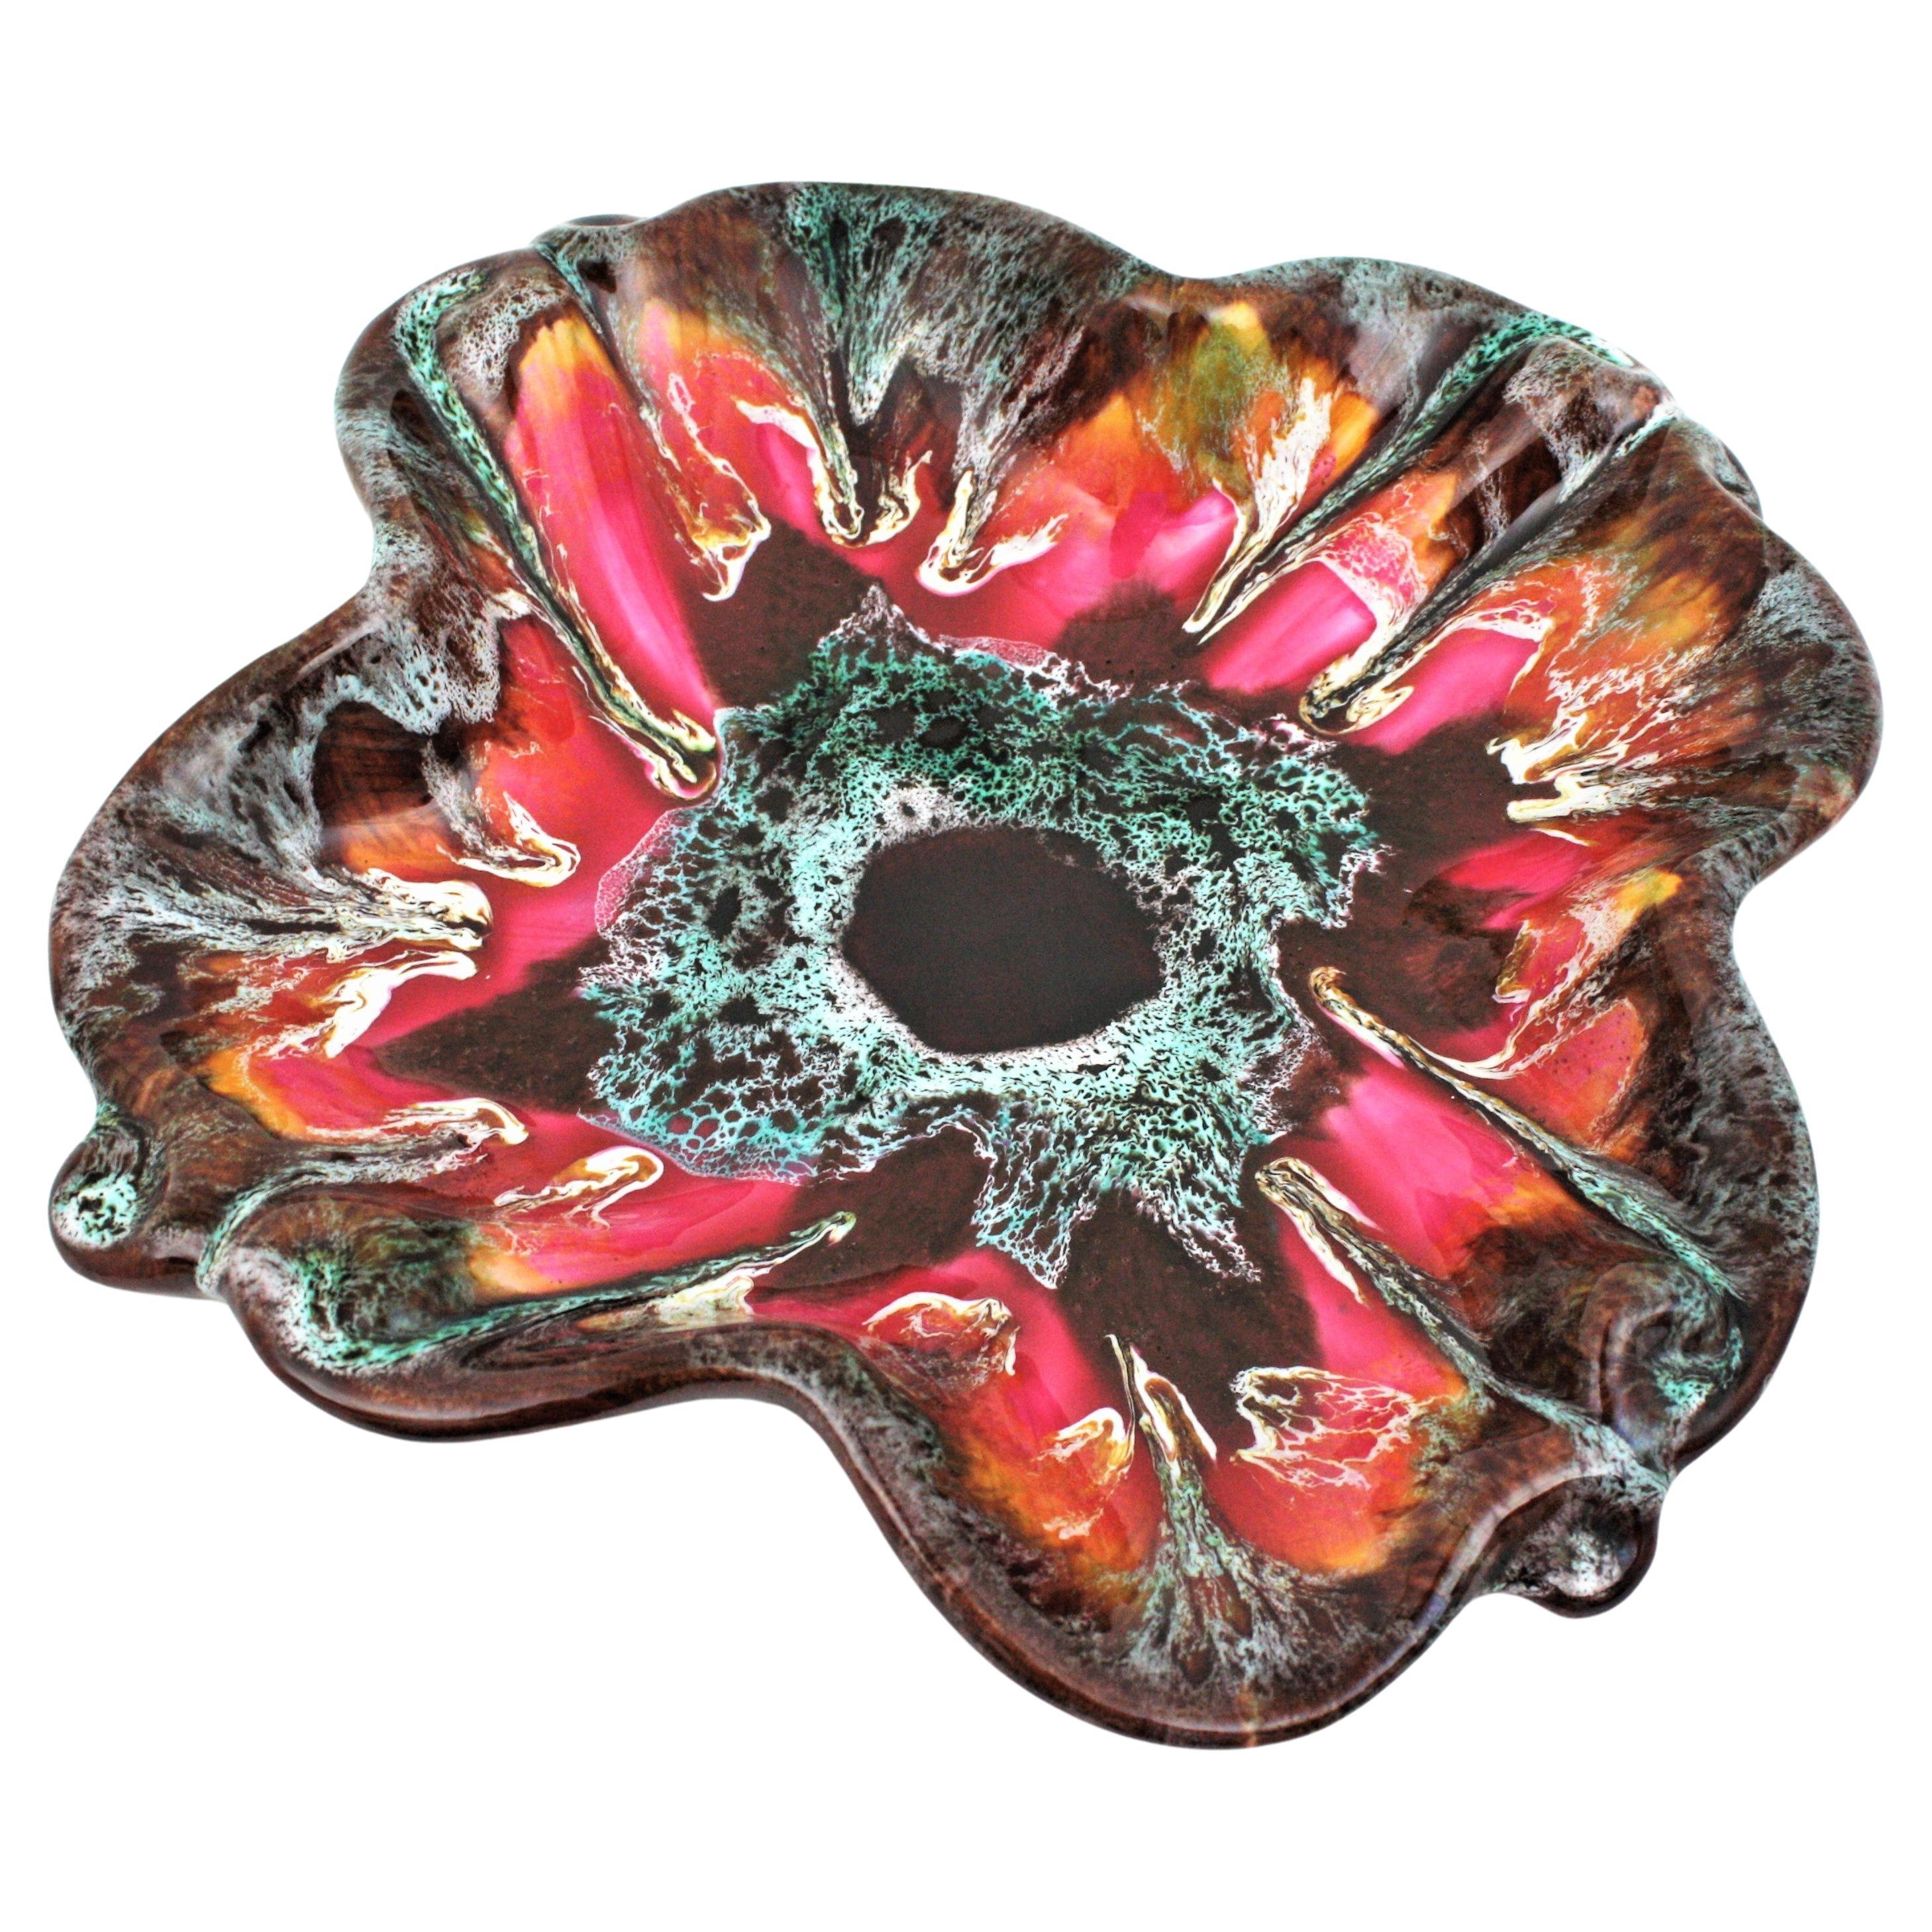 Mid-Century Modern mehrfarbig glasierte Keramik Blume Tafelaufsatz Schüssel. Hergestellt von Vallauris, Frankreich, 1950-1960.
Auffällige und farbenfrohe, blumenförmige, glasierte Keramikplatte oder Schale für den Tafelaufsatz. Fettes Lavamuster in